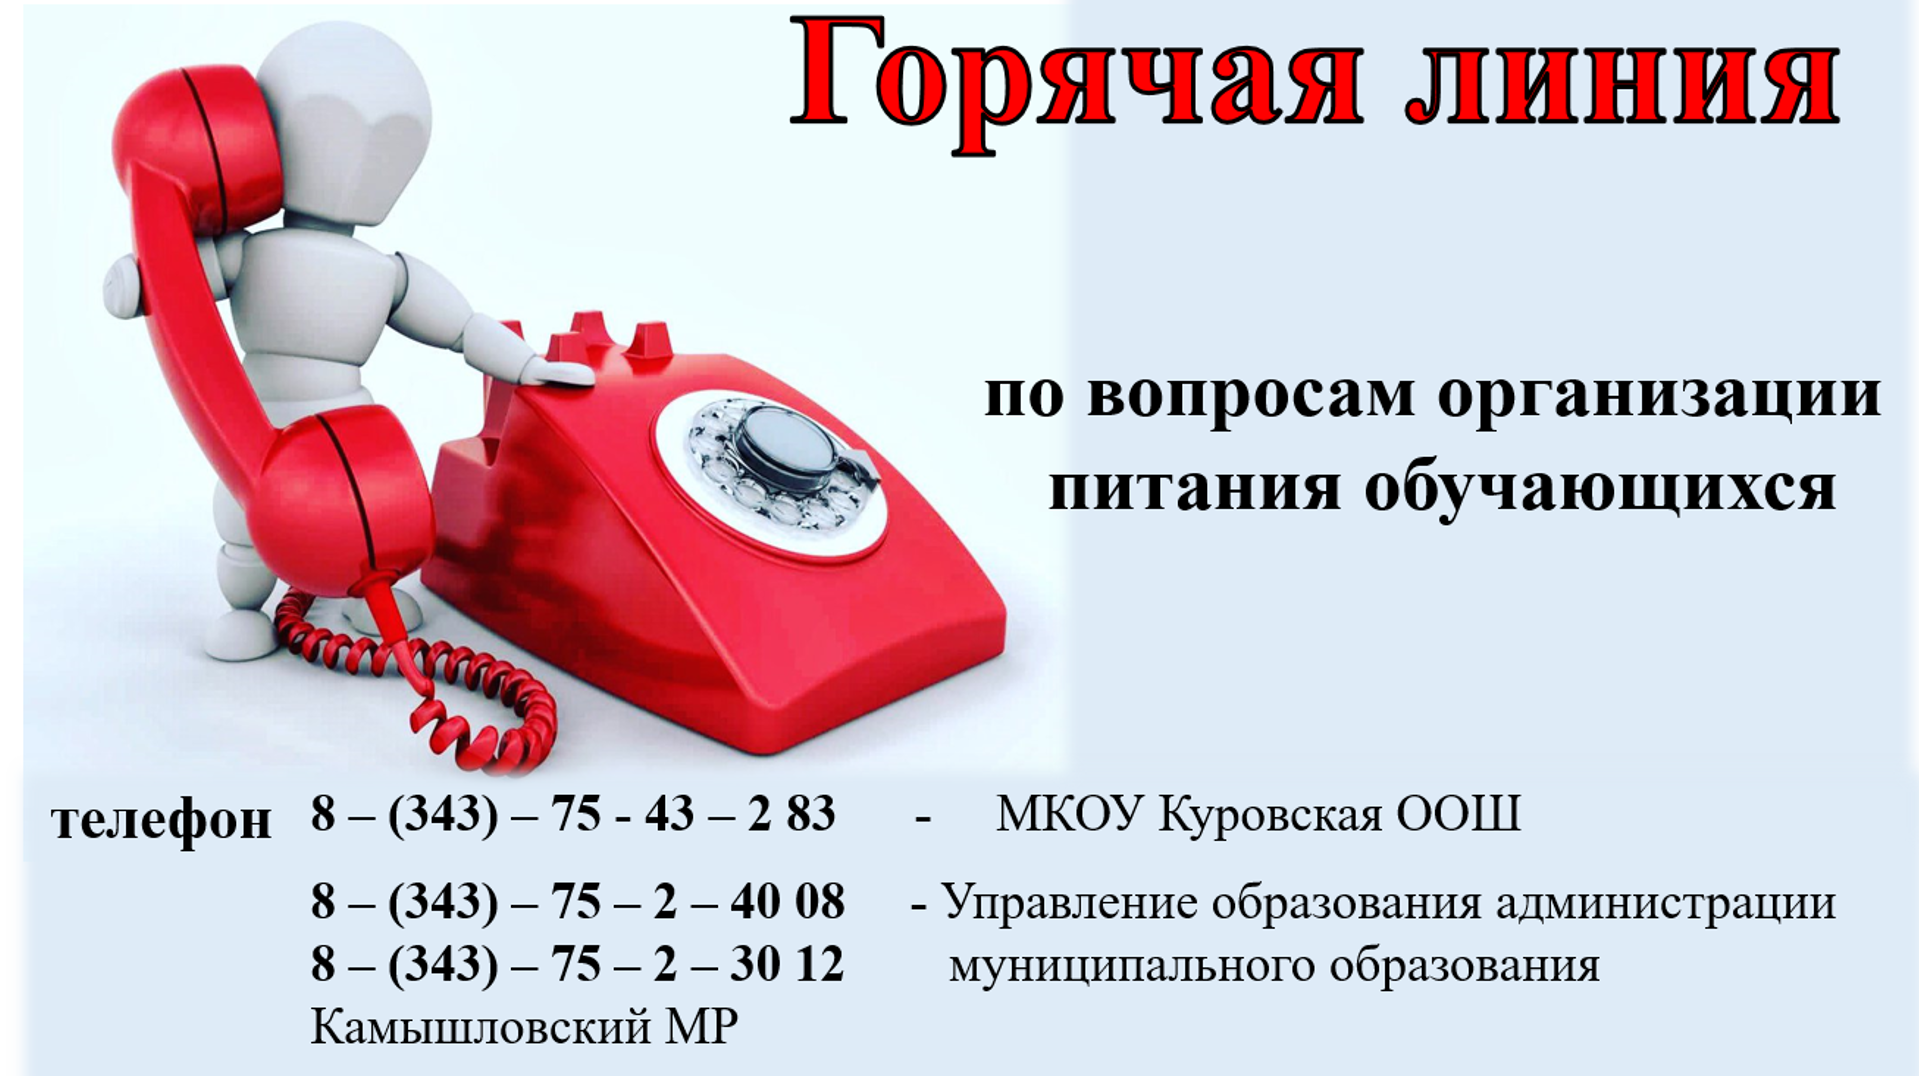 Налоговая московской области горячая линия телефон. Телефон горячей линии. Номер горячей линии по всем вопросам. Позвонить на горячую линию. Служба горячей линии.